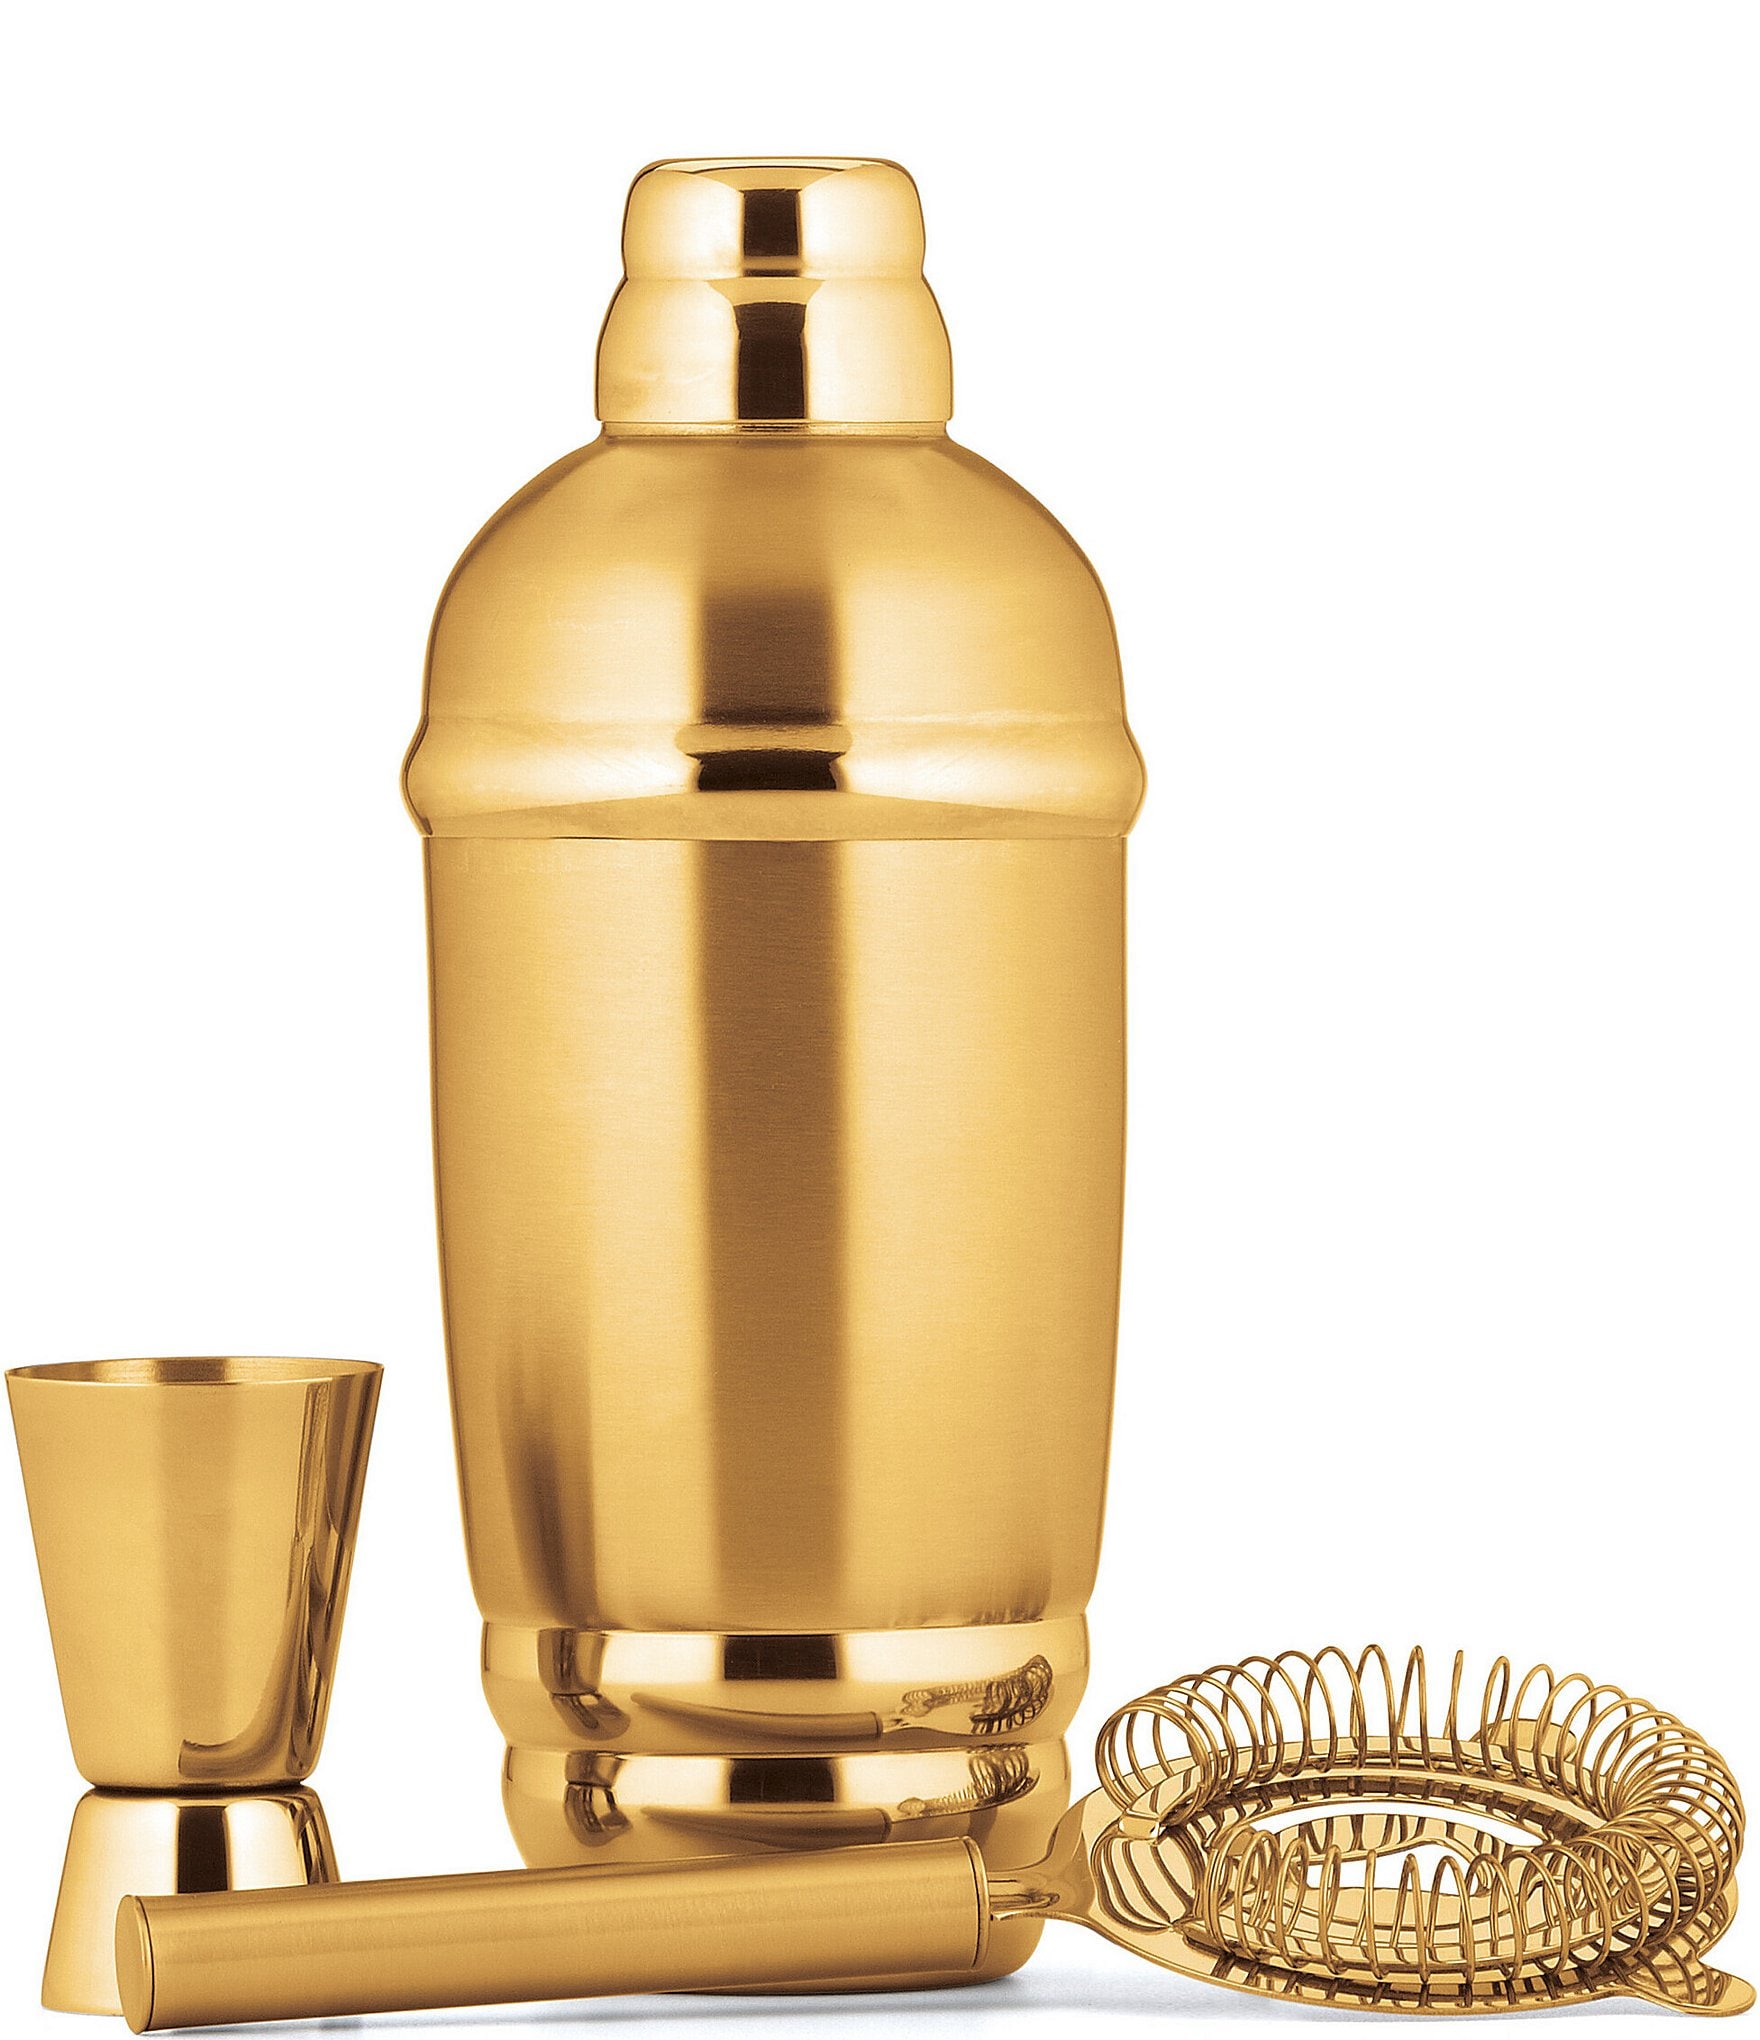 Glass & Brass Cocktail Shaker / Small 10oz + sett – One Mercantile / Sett